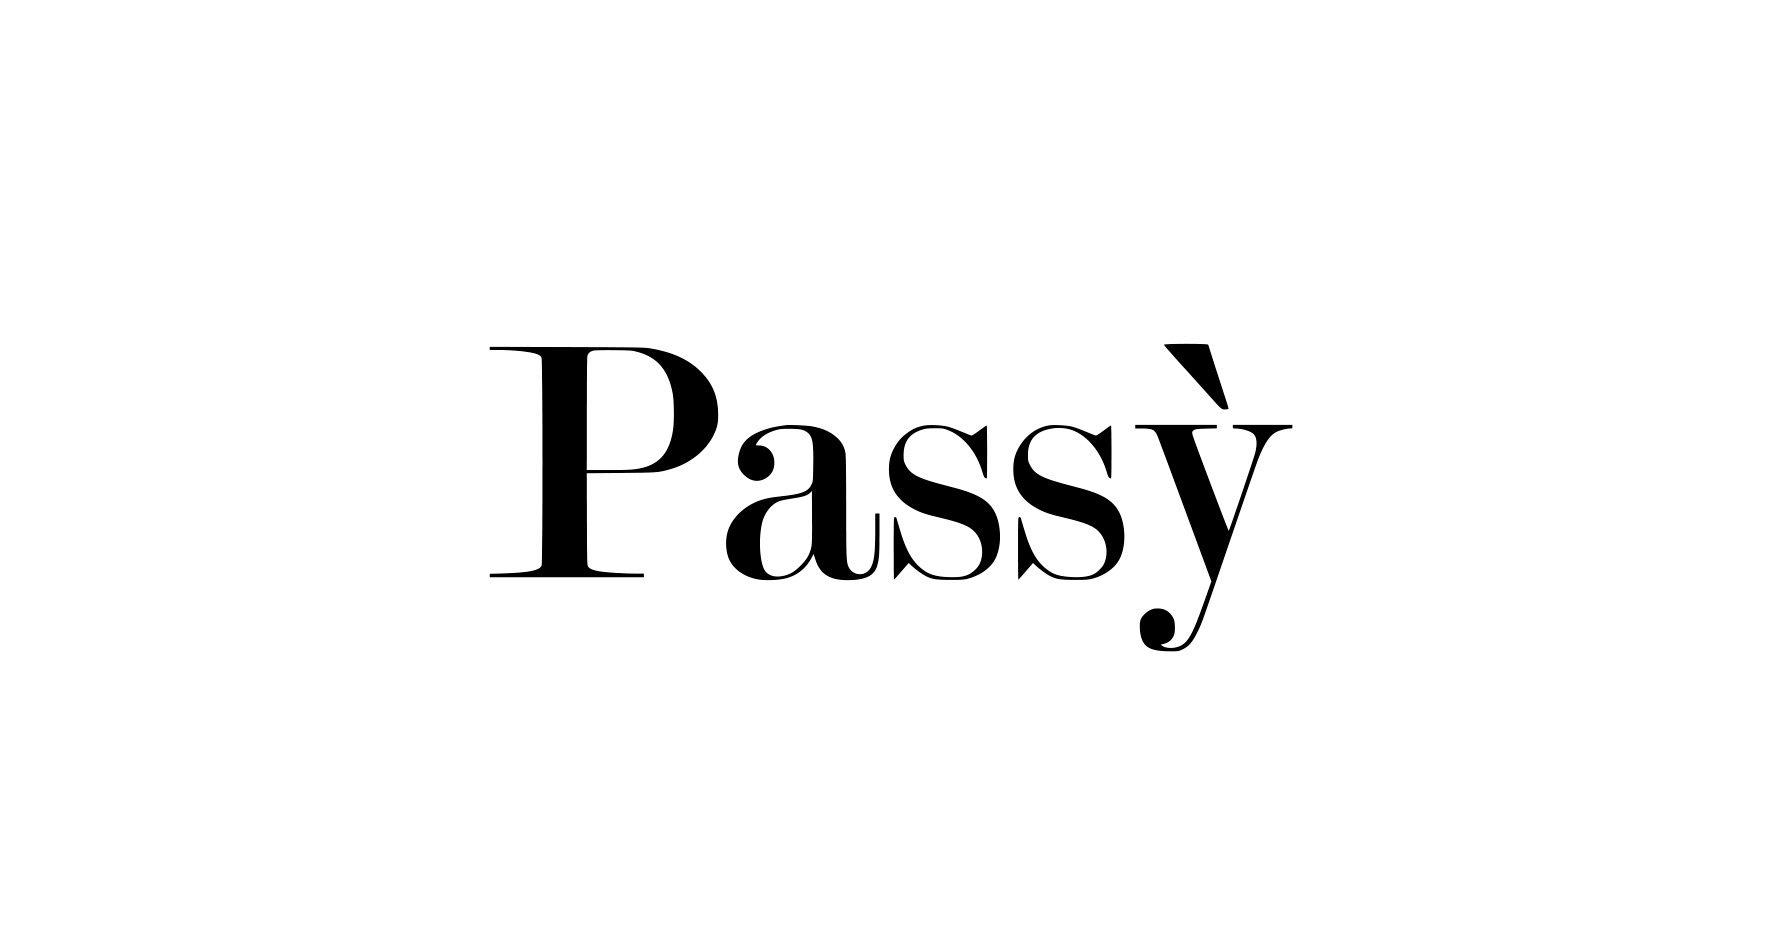 Passý Одежда и аксессуары, купить онлайн, Passý в универмаге Bolshoy